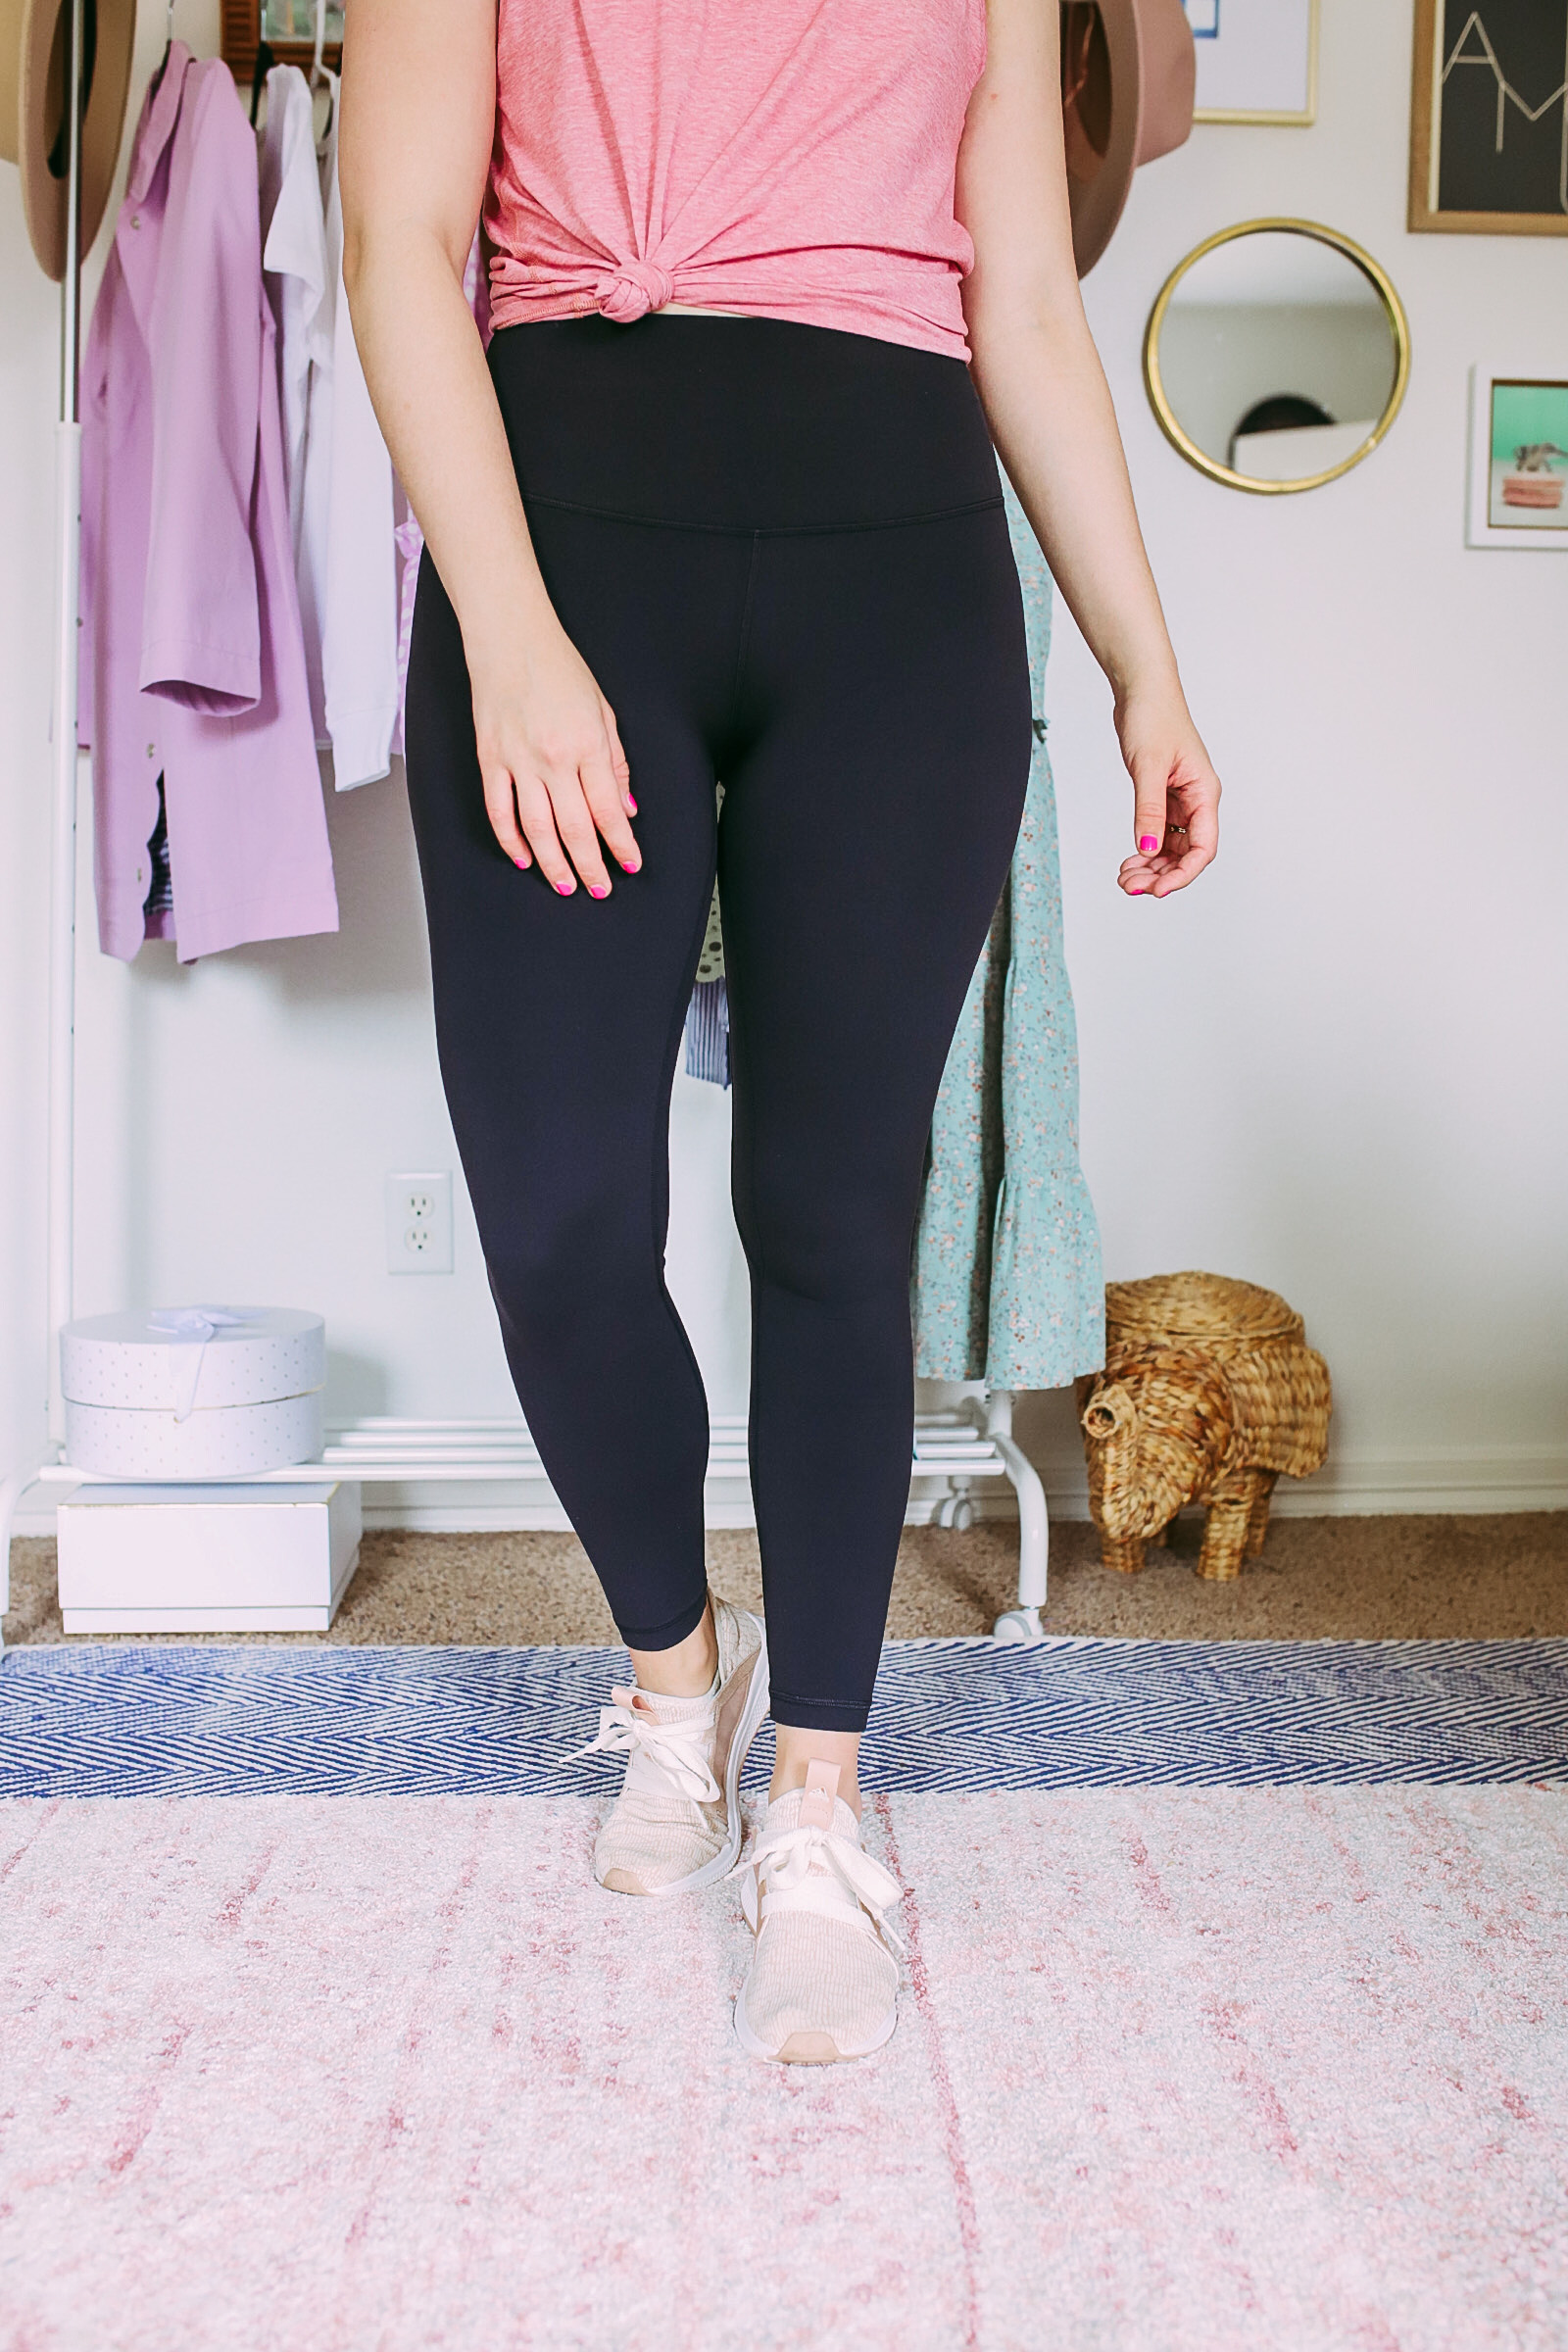 Lululemon Align Leggings Size 4 - $58 - From Hayley